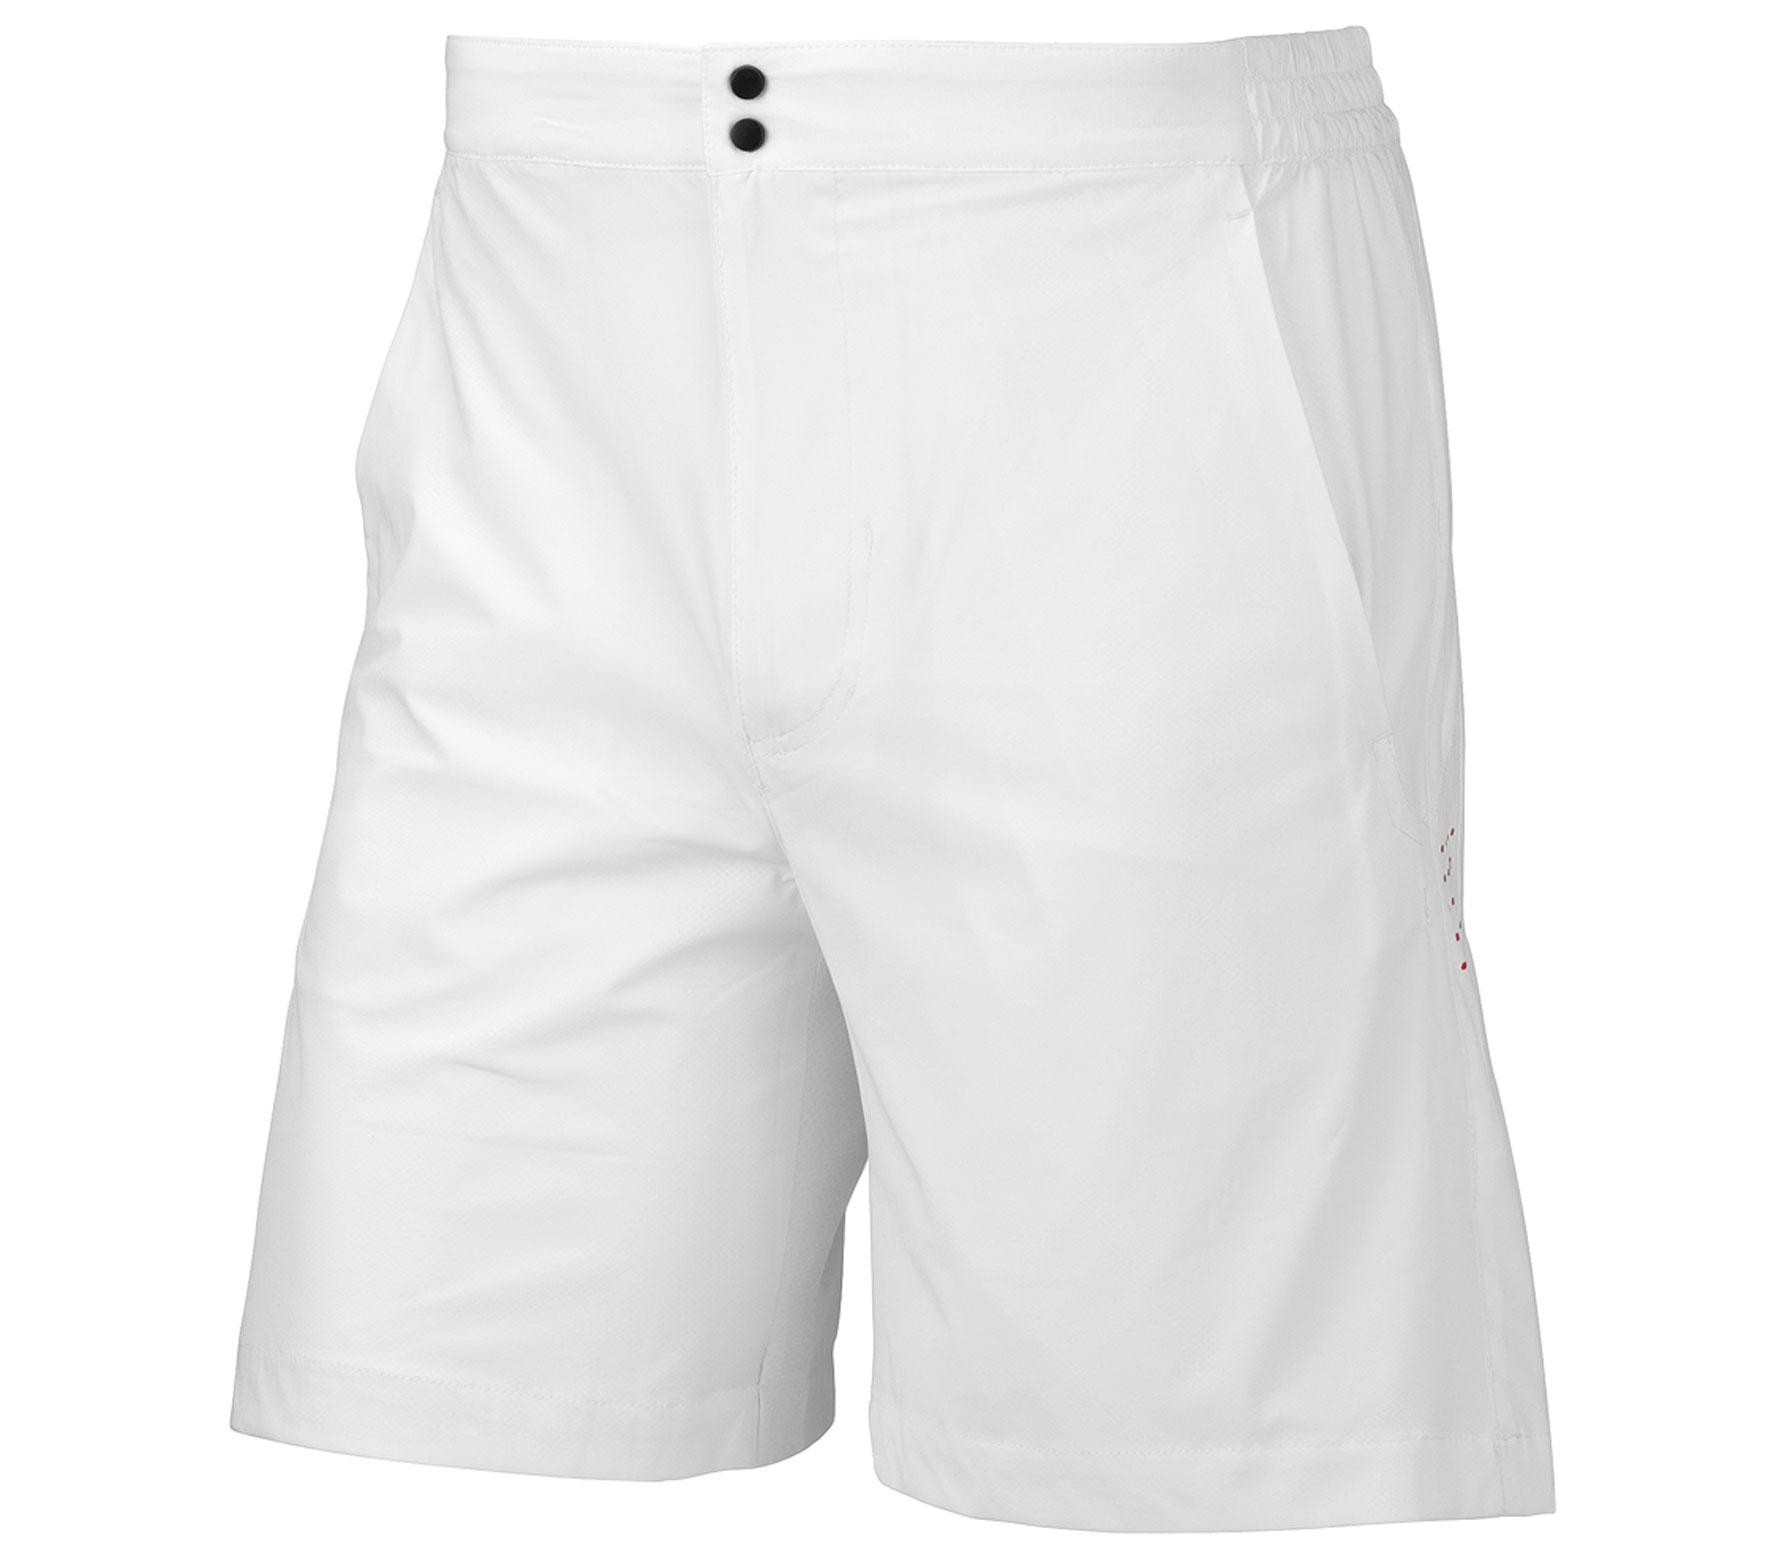 Foto Head - Miami pantalón corto blanco - L